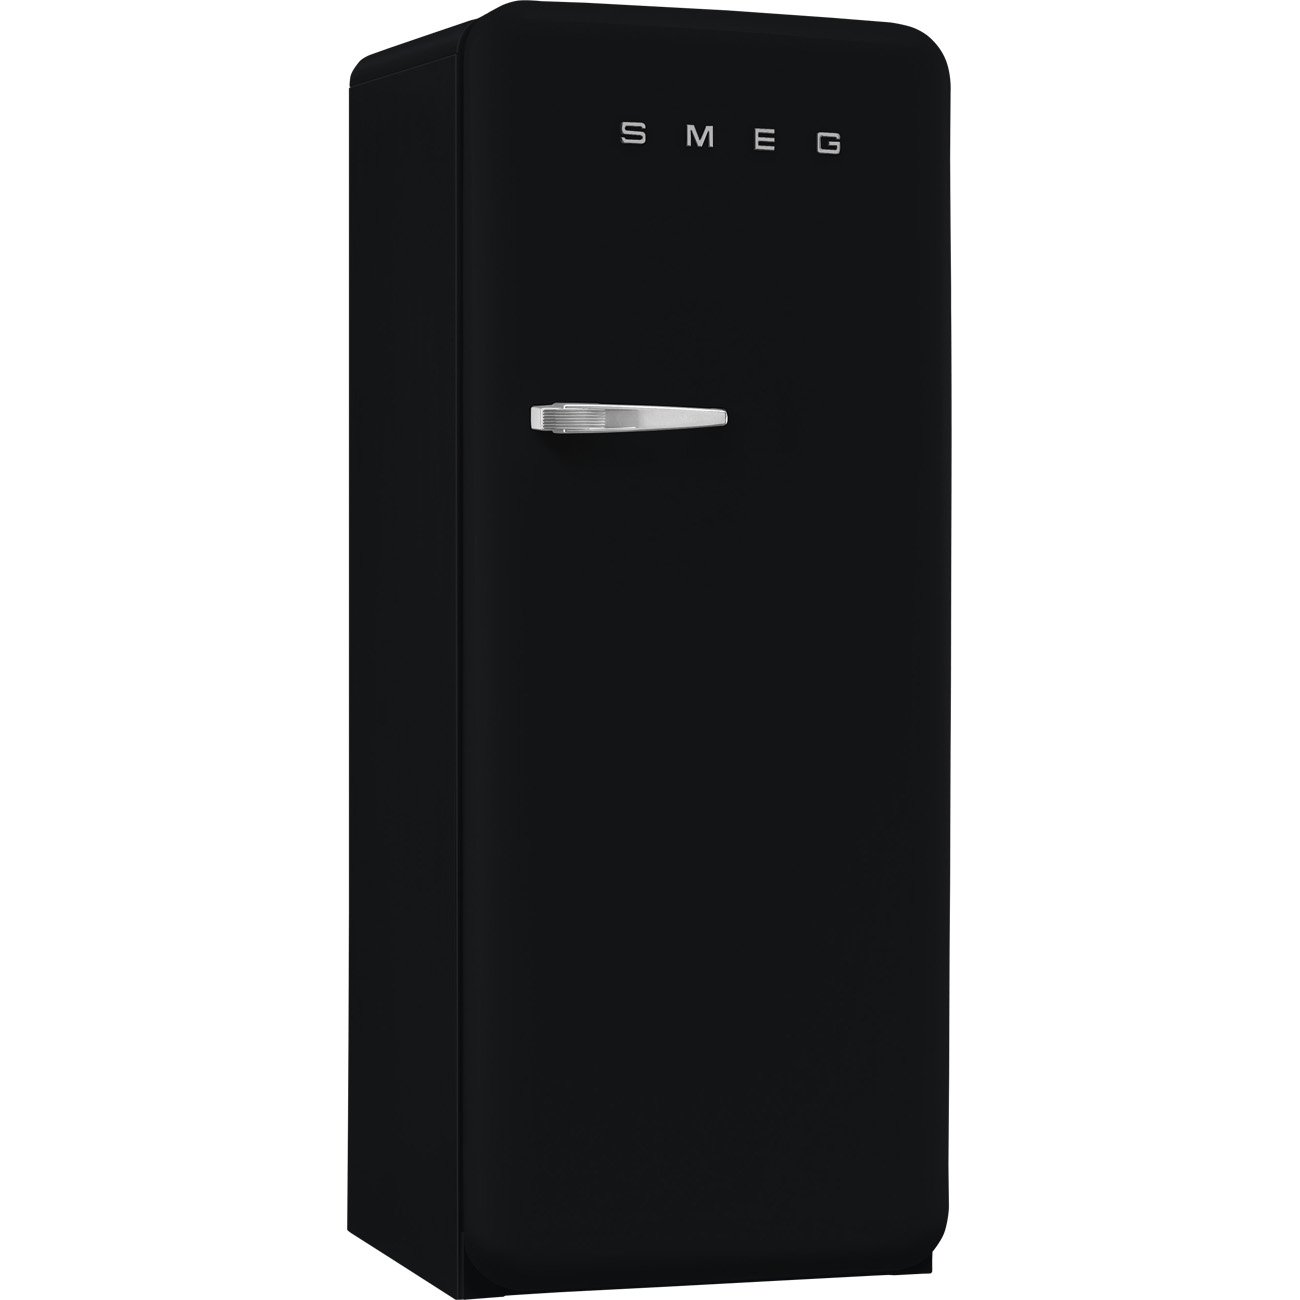 Black refrigerator - Smeg_7